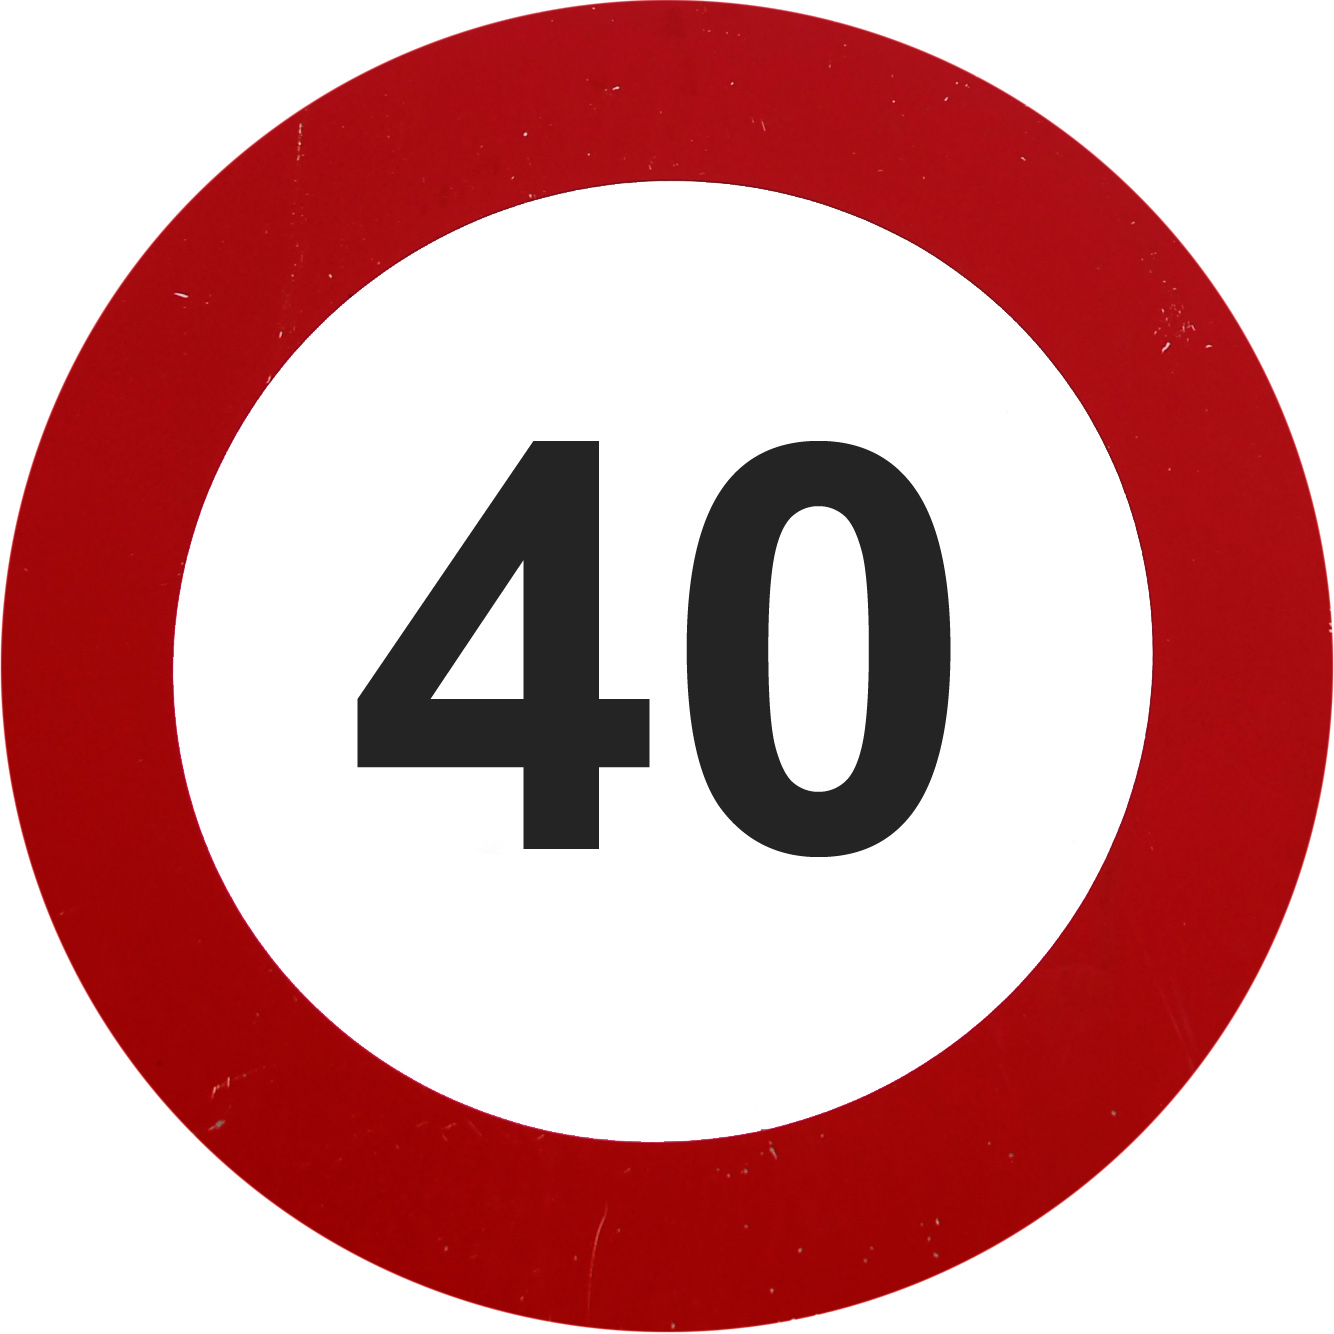 عندما تقول اللافتة السرعة القصوة 40 لا تتجاوز الـ 40